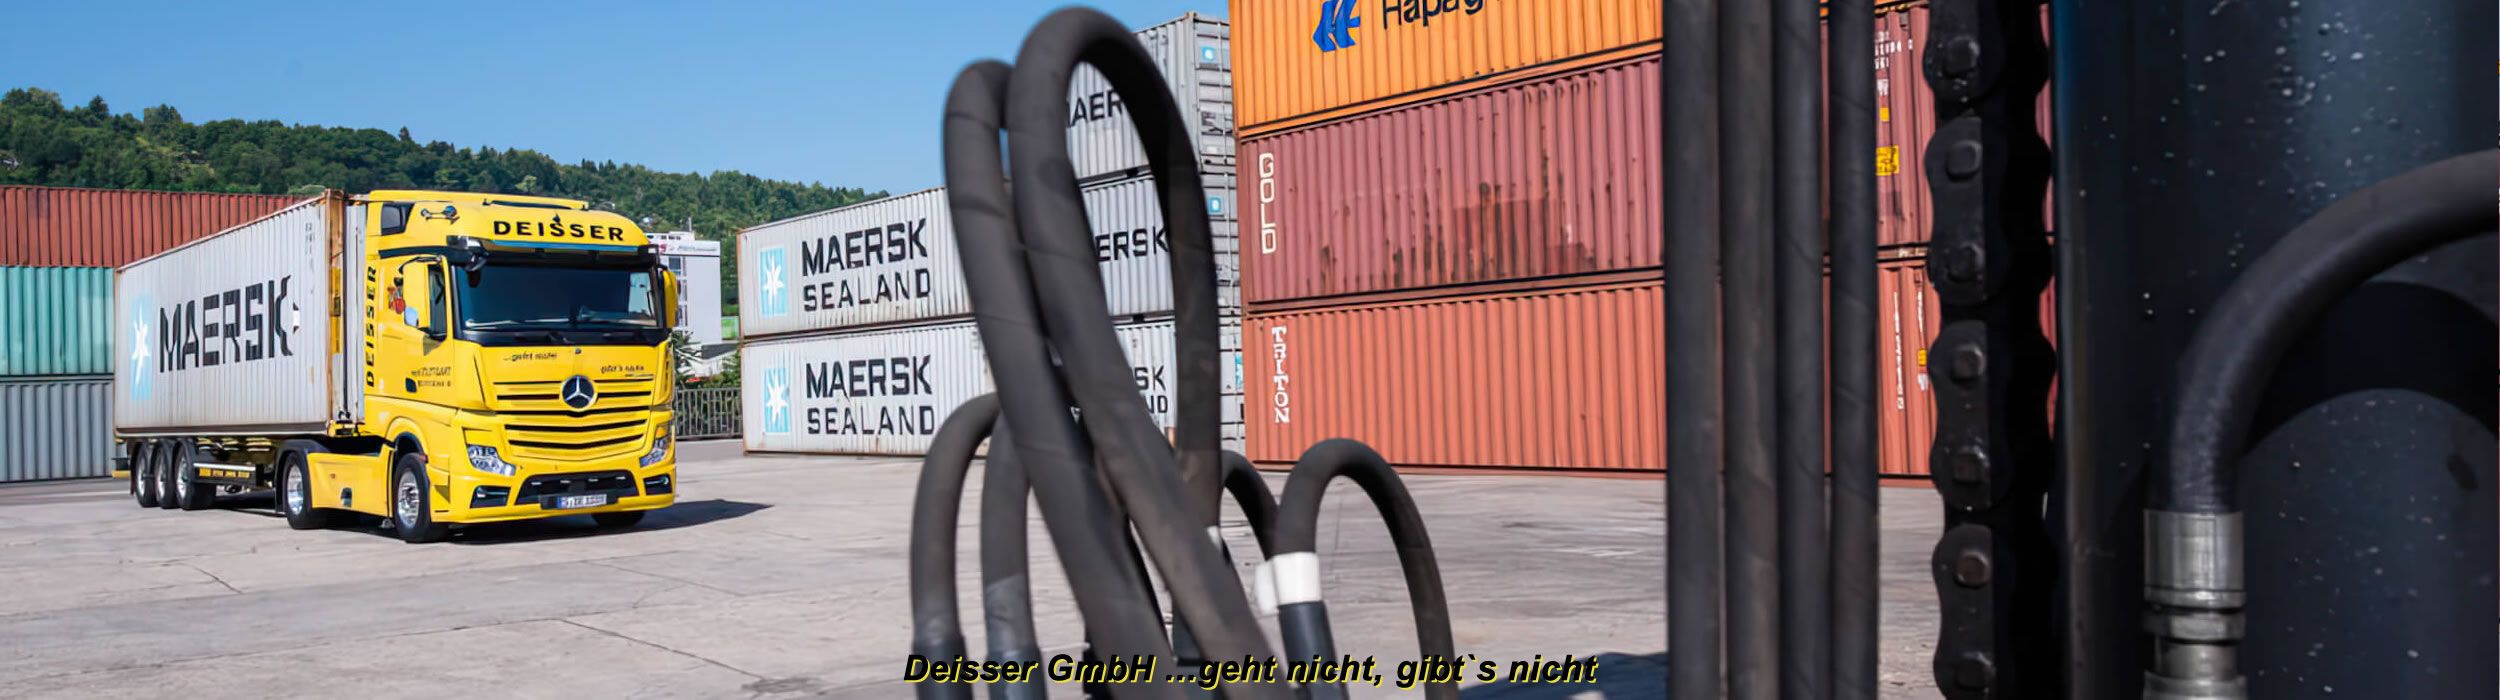 Deisser GmbH / Transportlogistik Seecontainer / Standorte & Depot